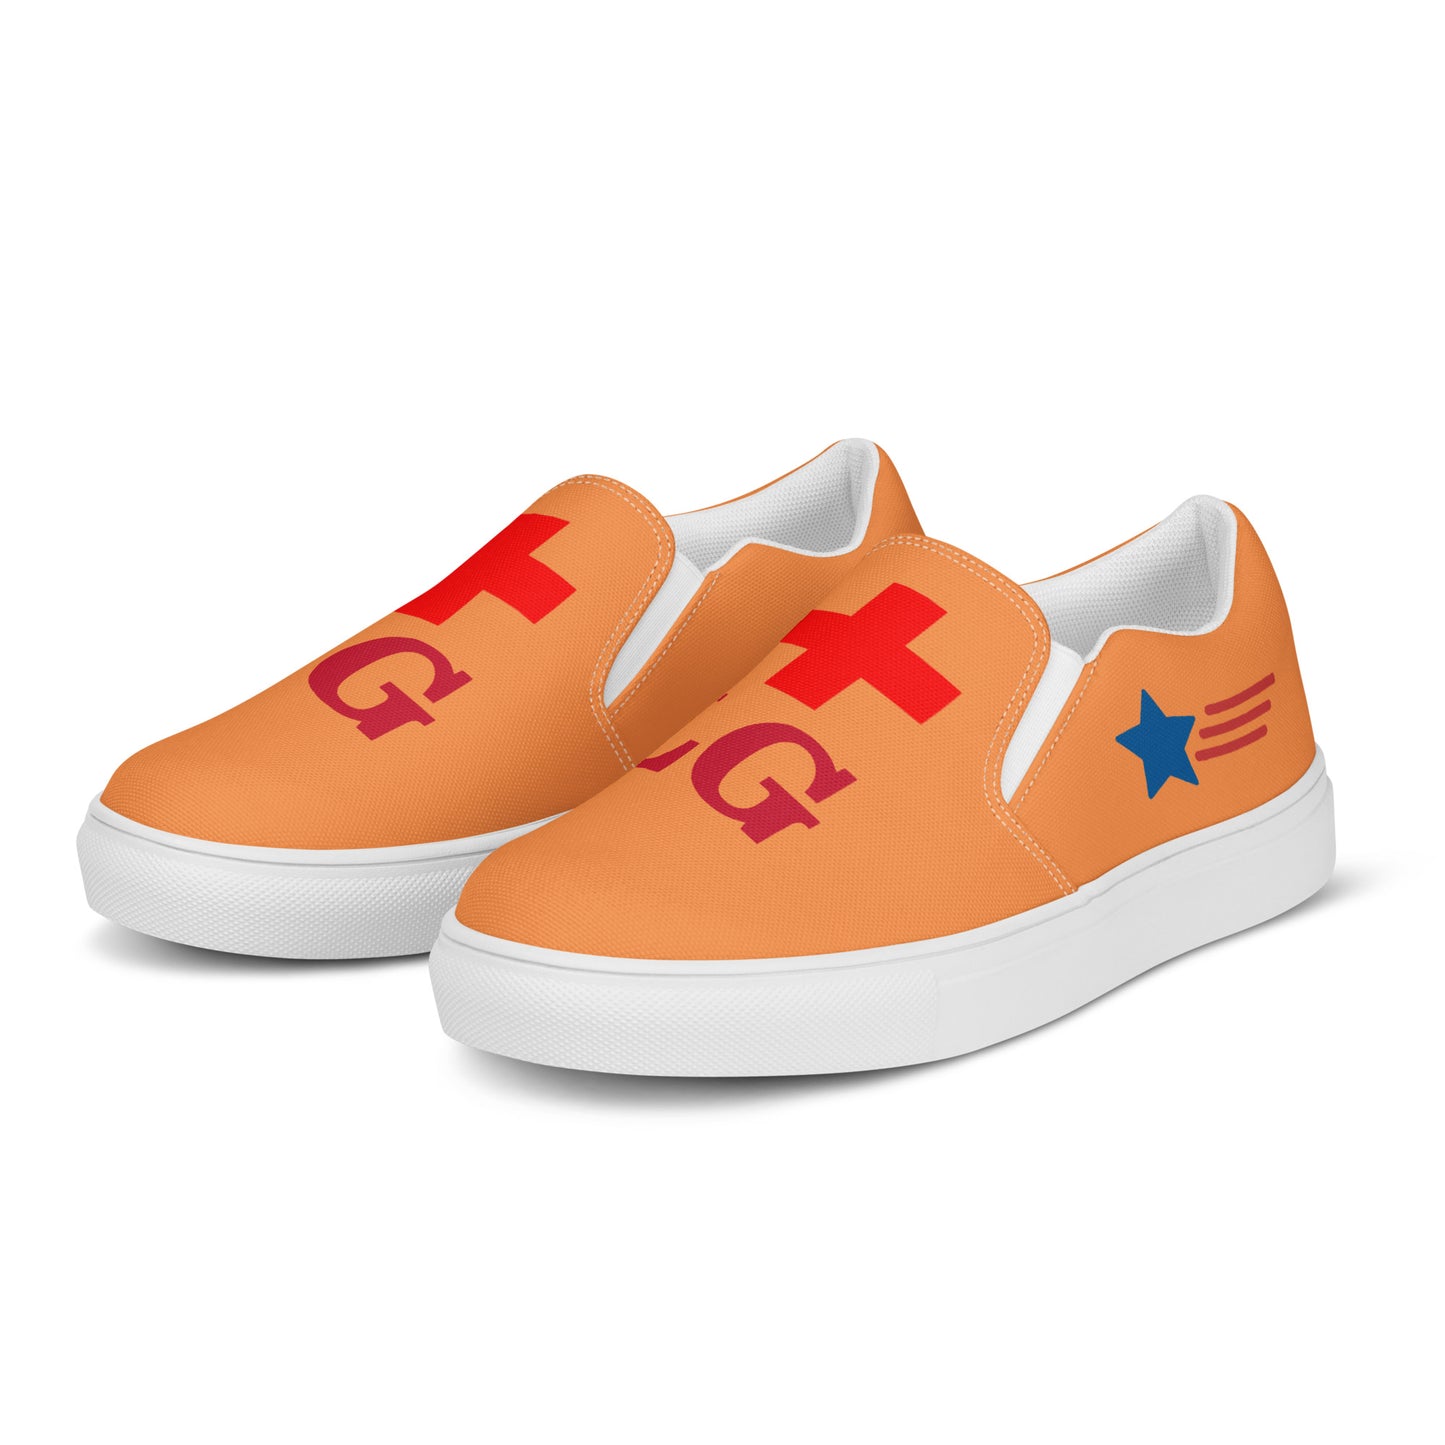 Lifeguard 954 Signature Men’s slip-on canvas shoes